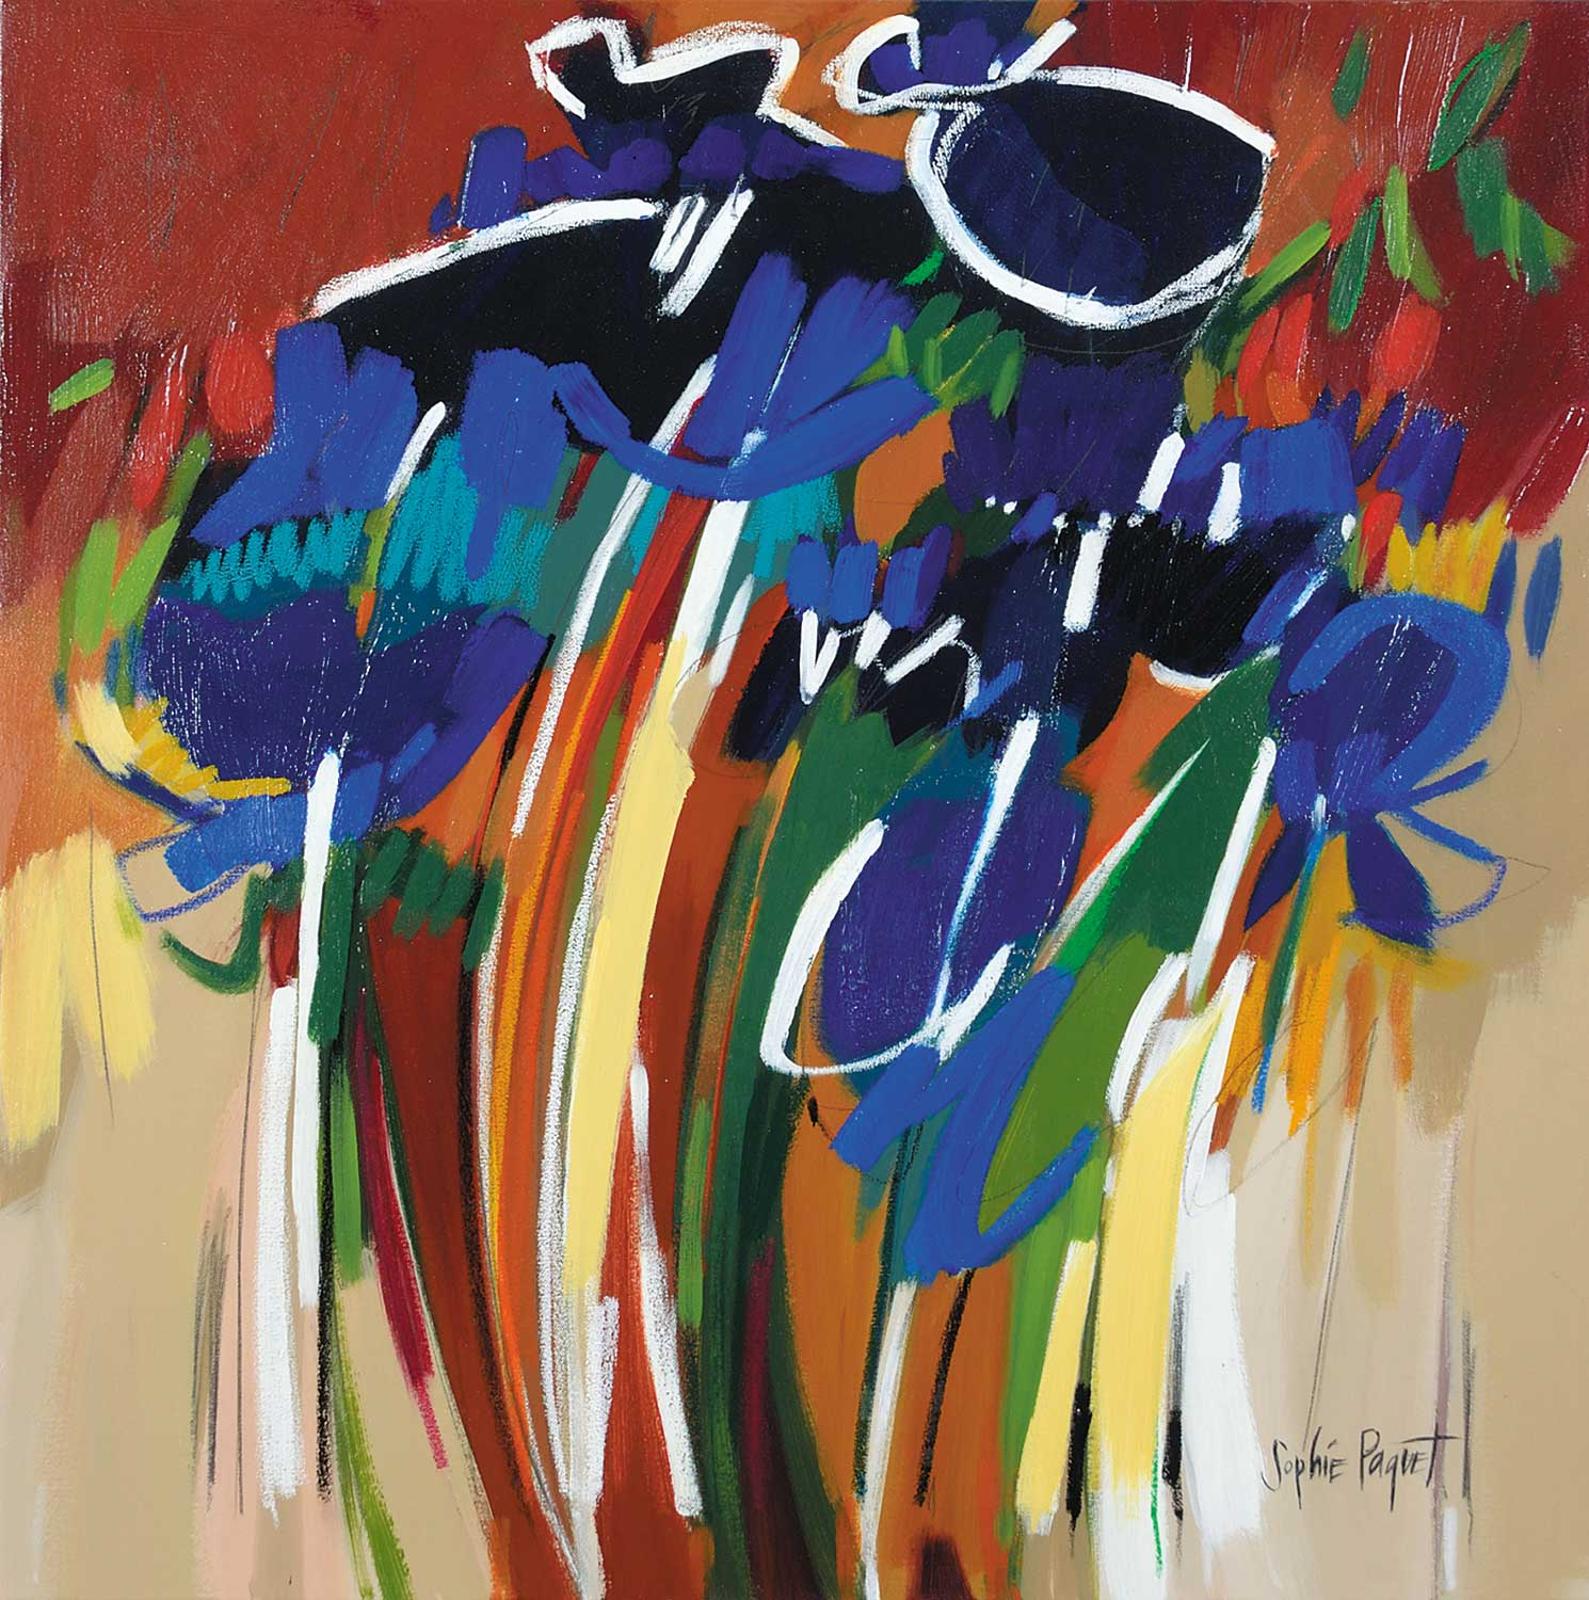 Sophie Paquet (1963) - Untitled - Blue Bouquet